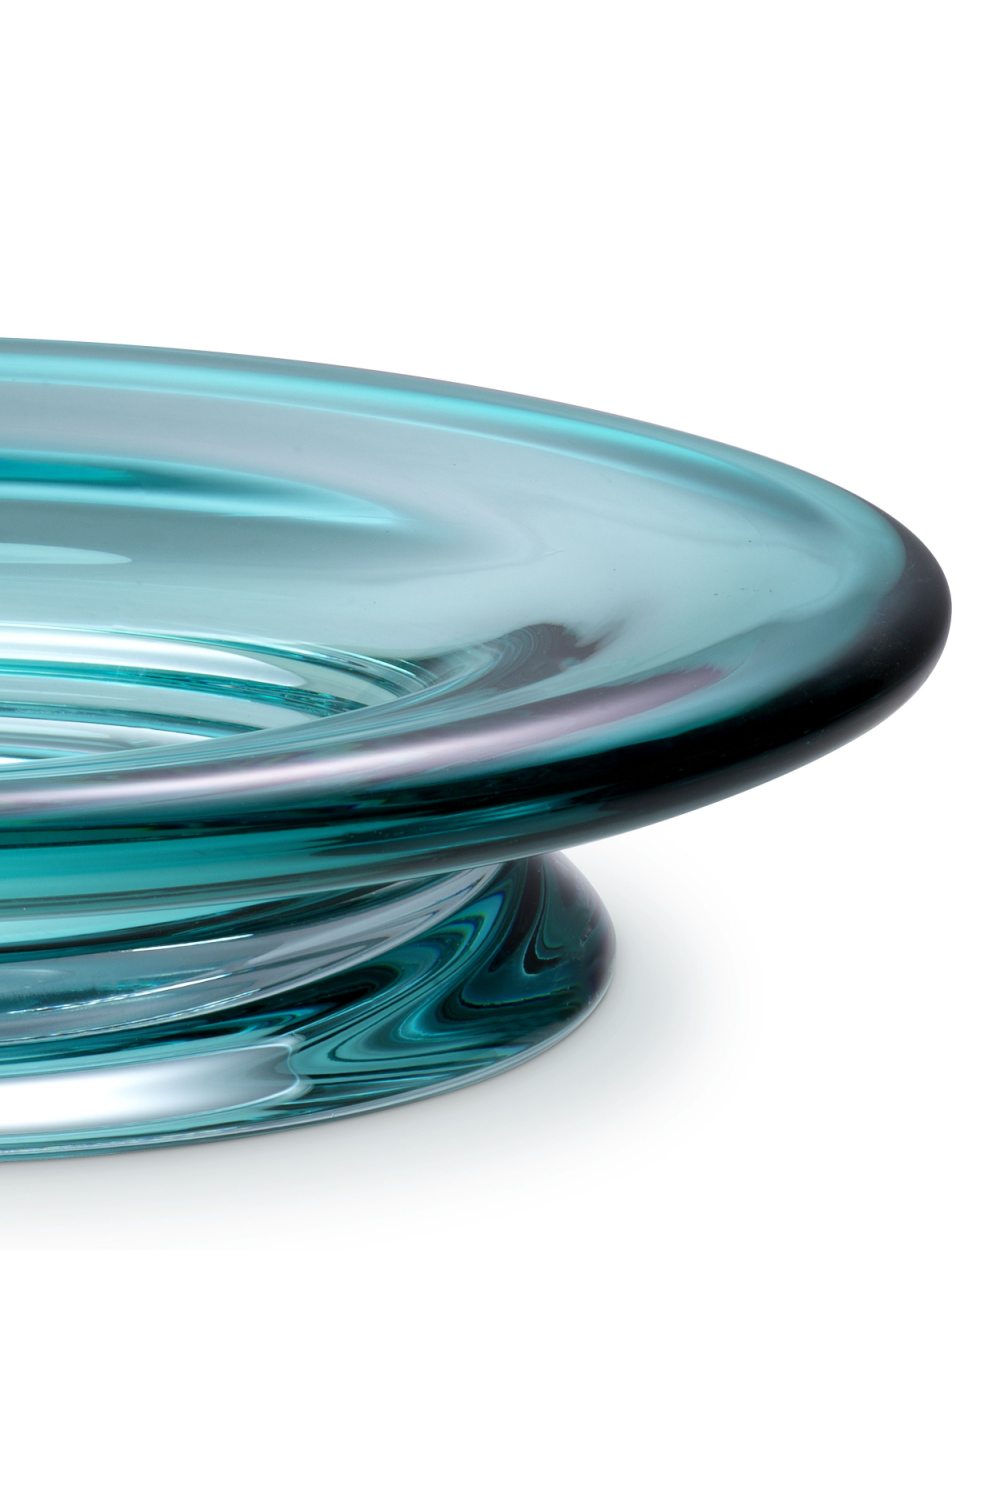 Turquoise Glass Bowl | Eichholtz Celia | OROA